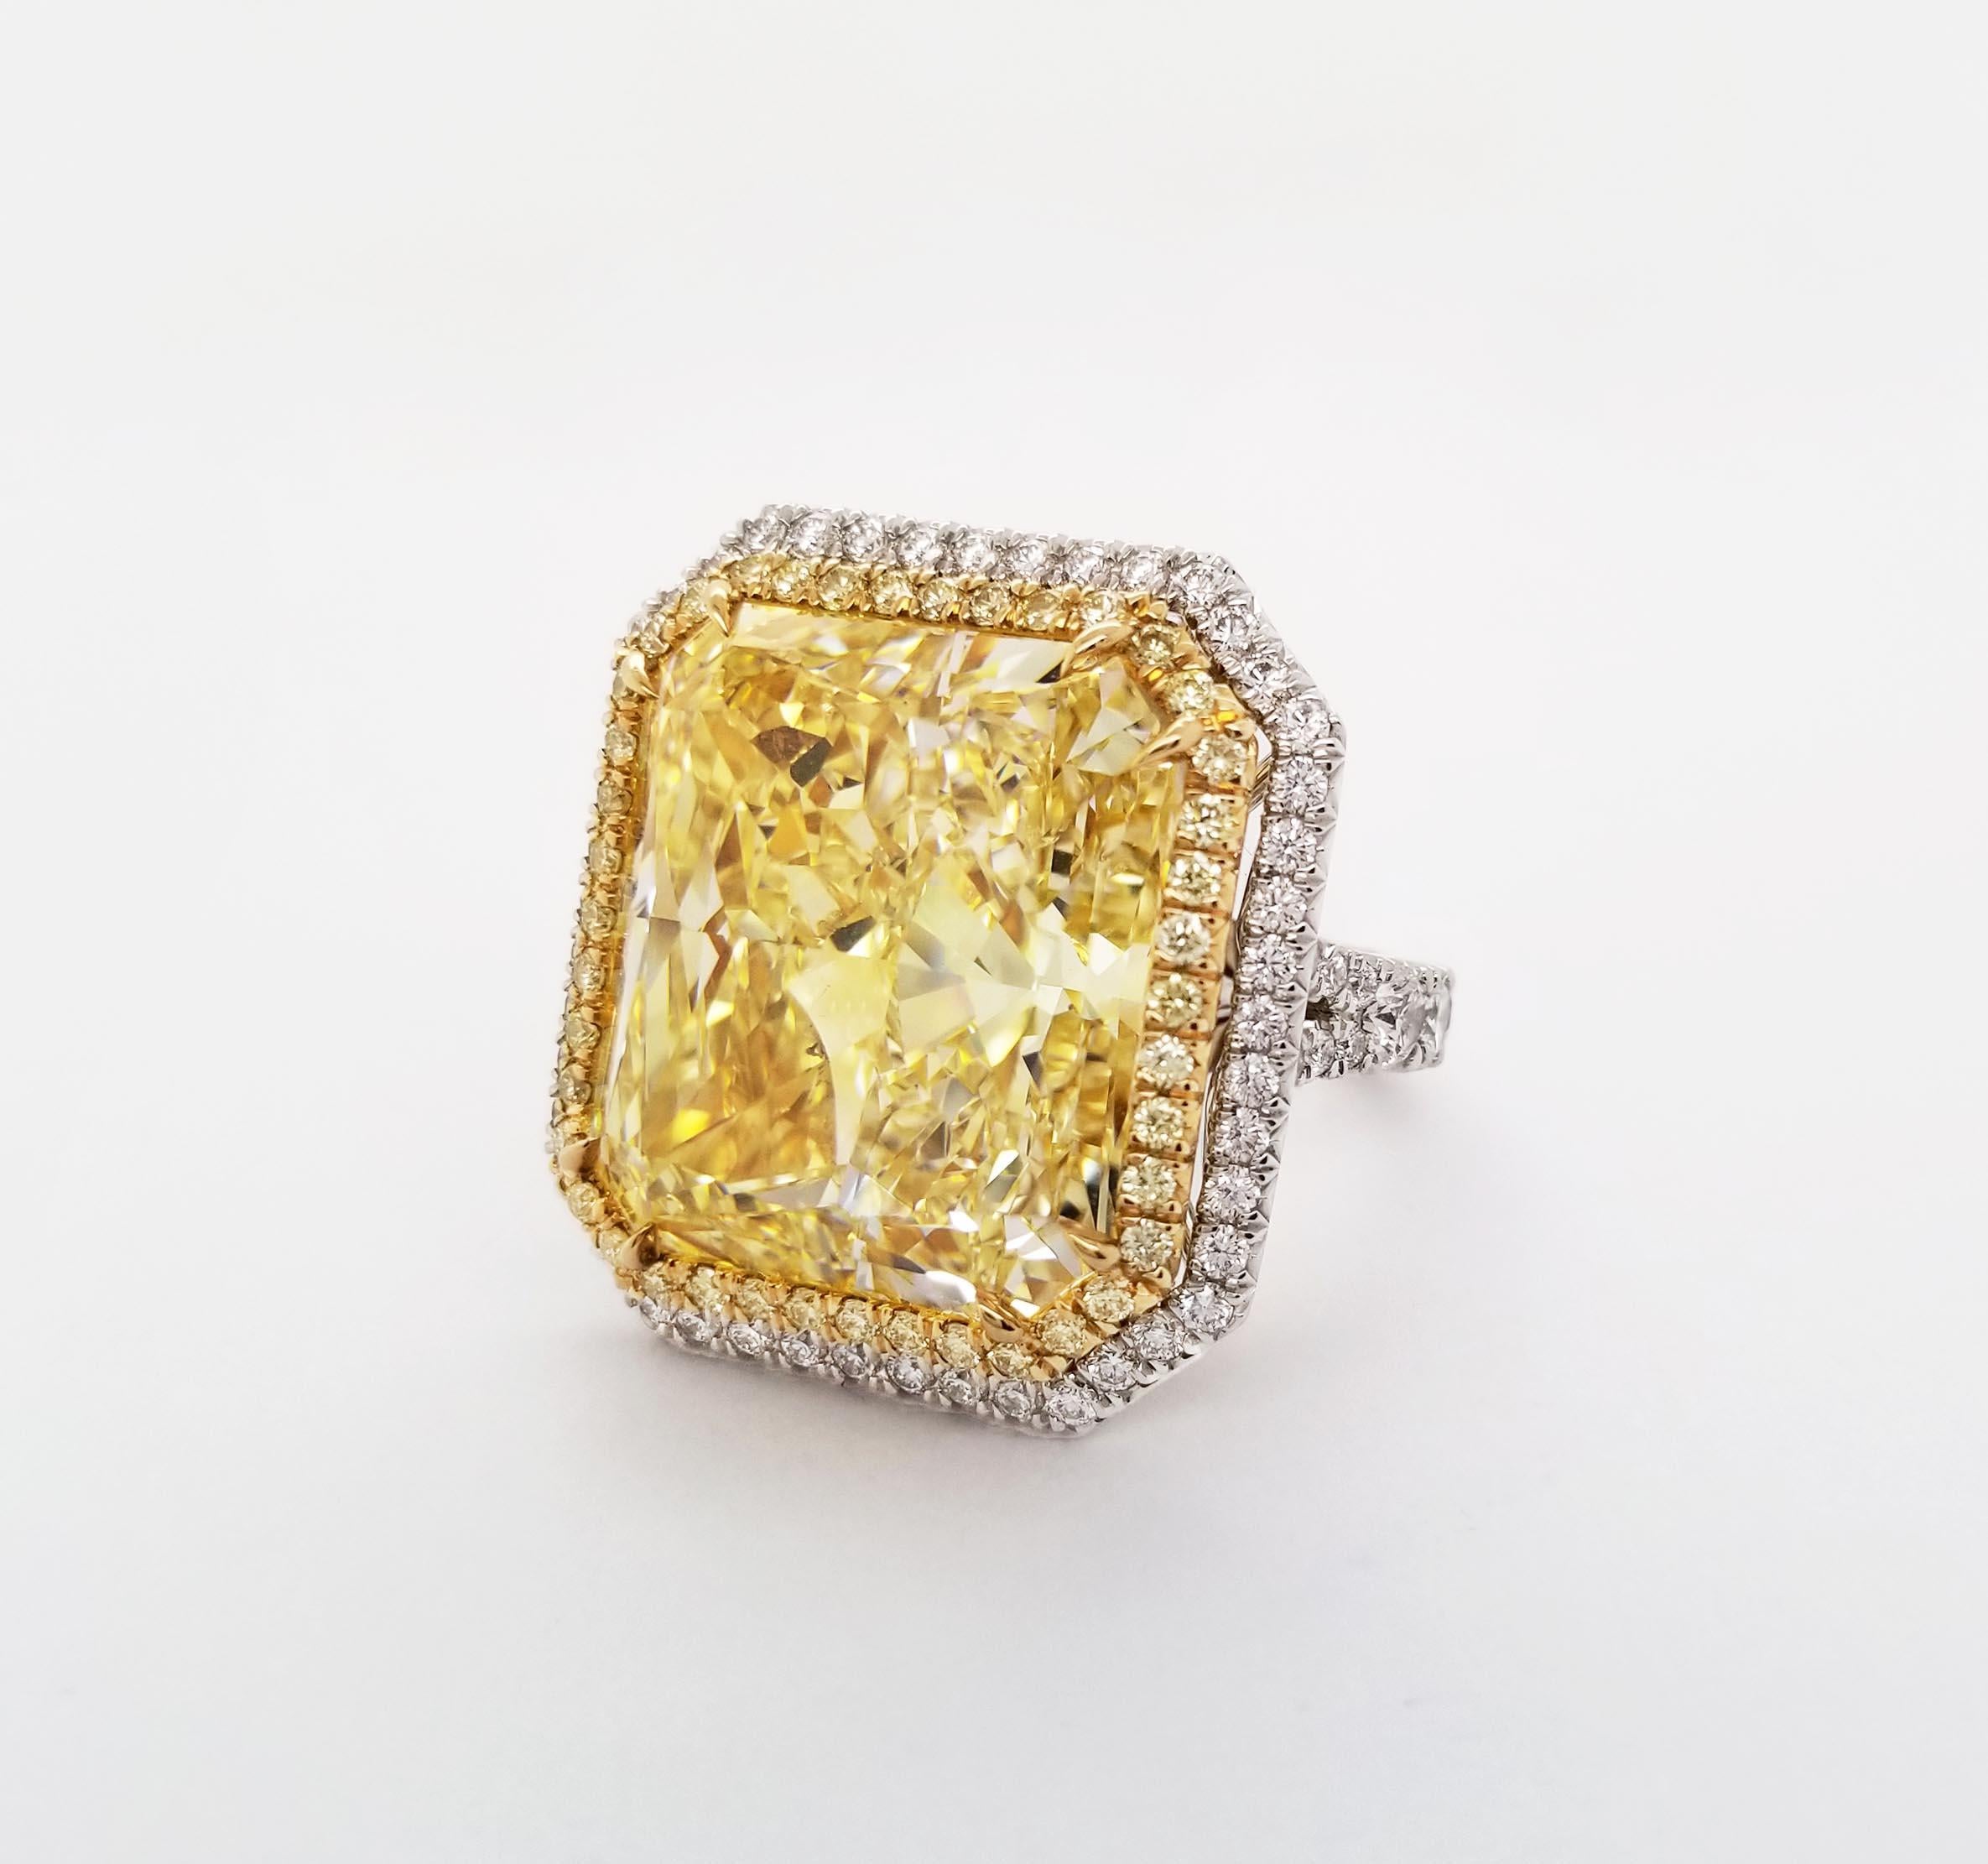 De SCARSELLI, un spectaculaire diamant naturel de 24+ carats de couleur jaune fantaisie serti dans une monture en or 18 carats faite à la main et parfaitement finie en platine (voir la photo du certificat pour les informations détaillées sur la